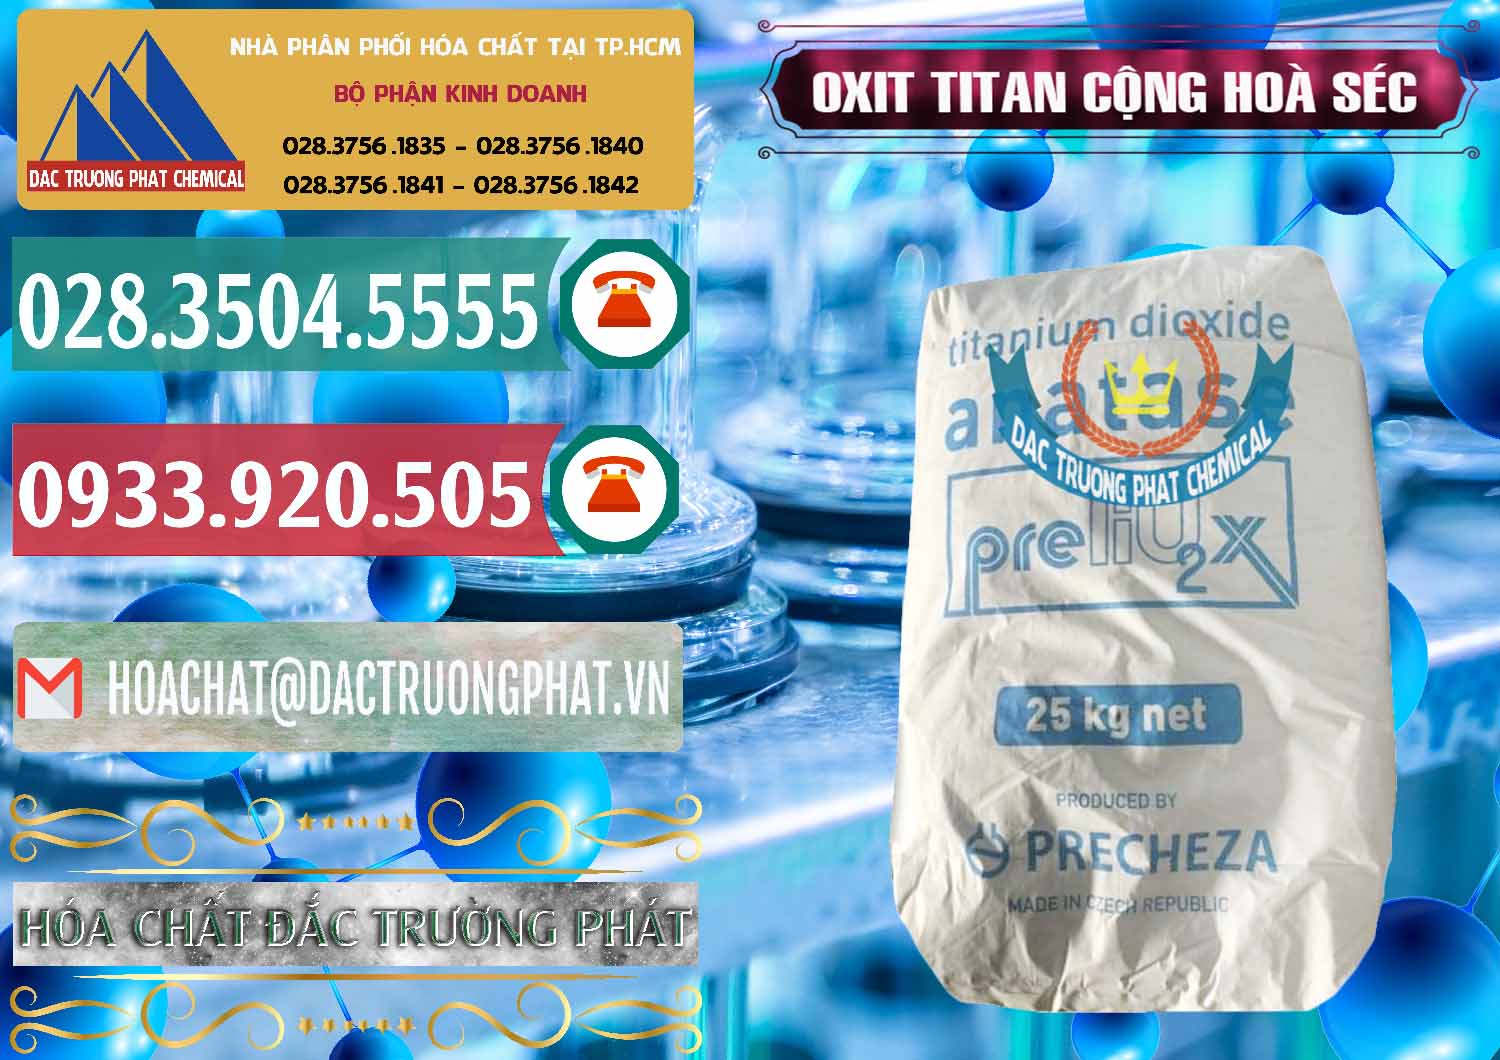 Công ty bán và phân phối Oxit Titan KA100 – Tio2 Cộng Hòa Séc Czech Republic - 0407 - Cty chuyên phân phối - nhập khẩu hóa chất tại TP.HCM - muabanhoachat.vn